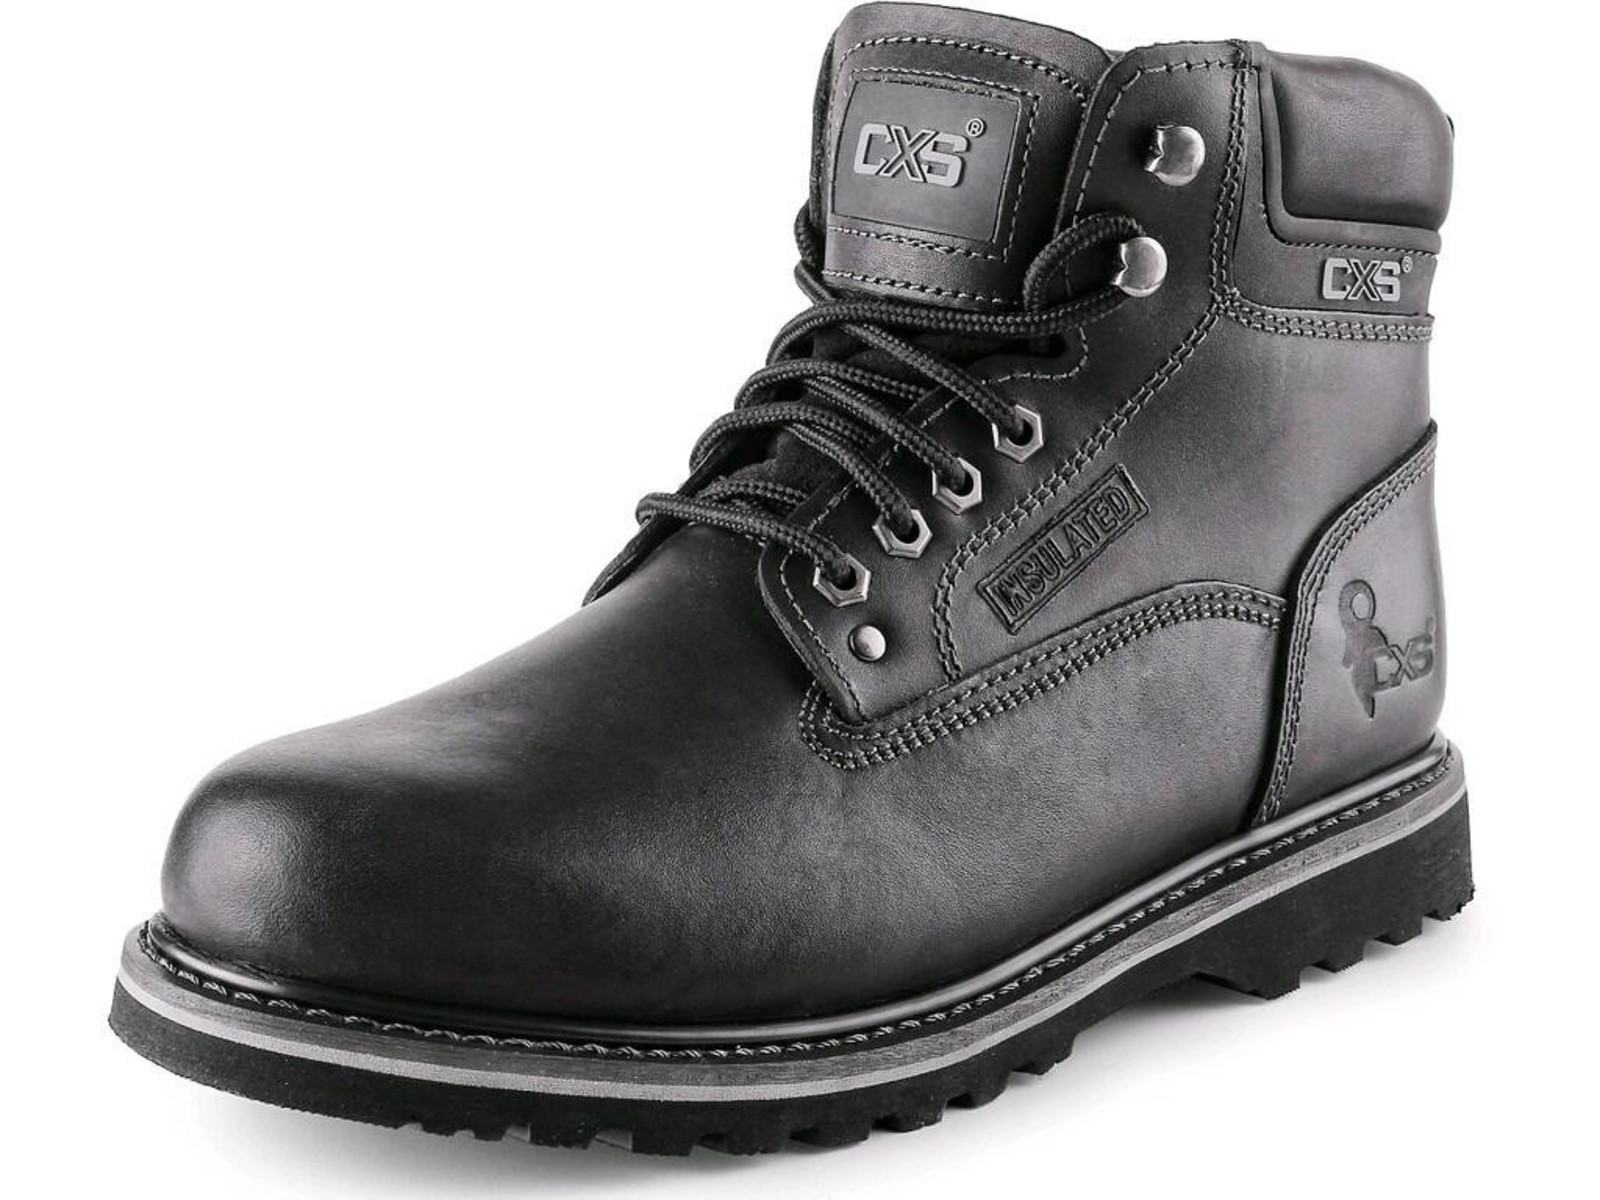 Členková obuv CXS Road - veľkosť: 48, farba: čierna